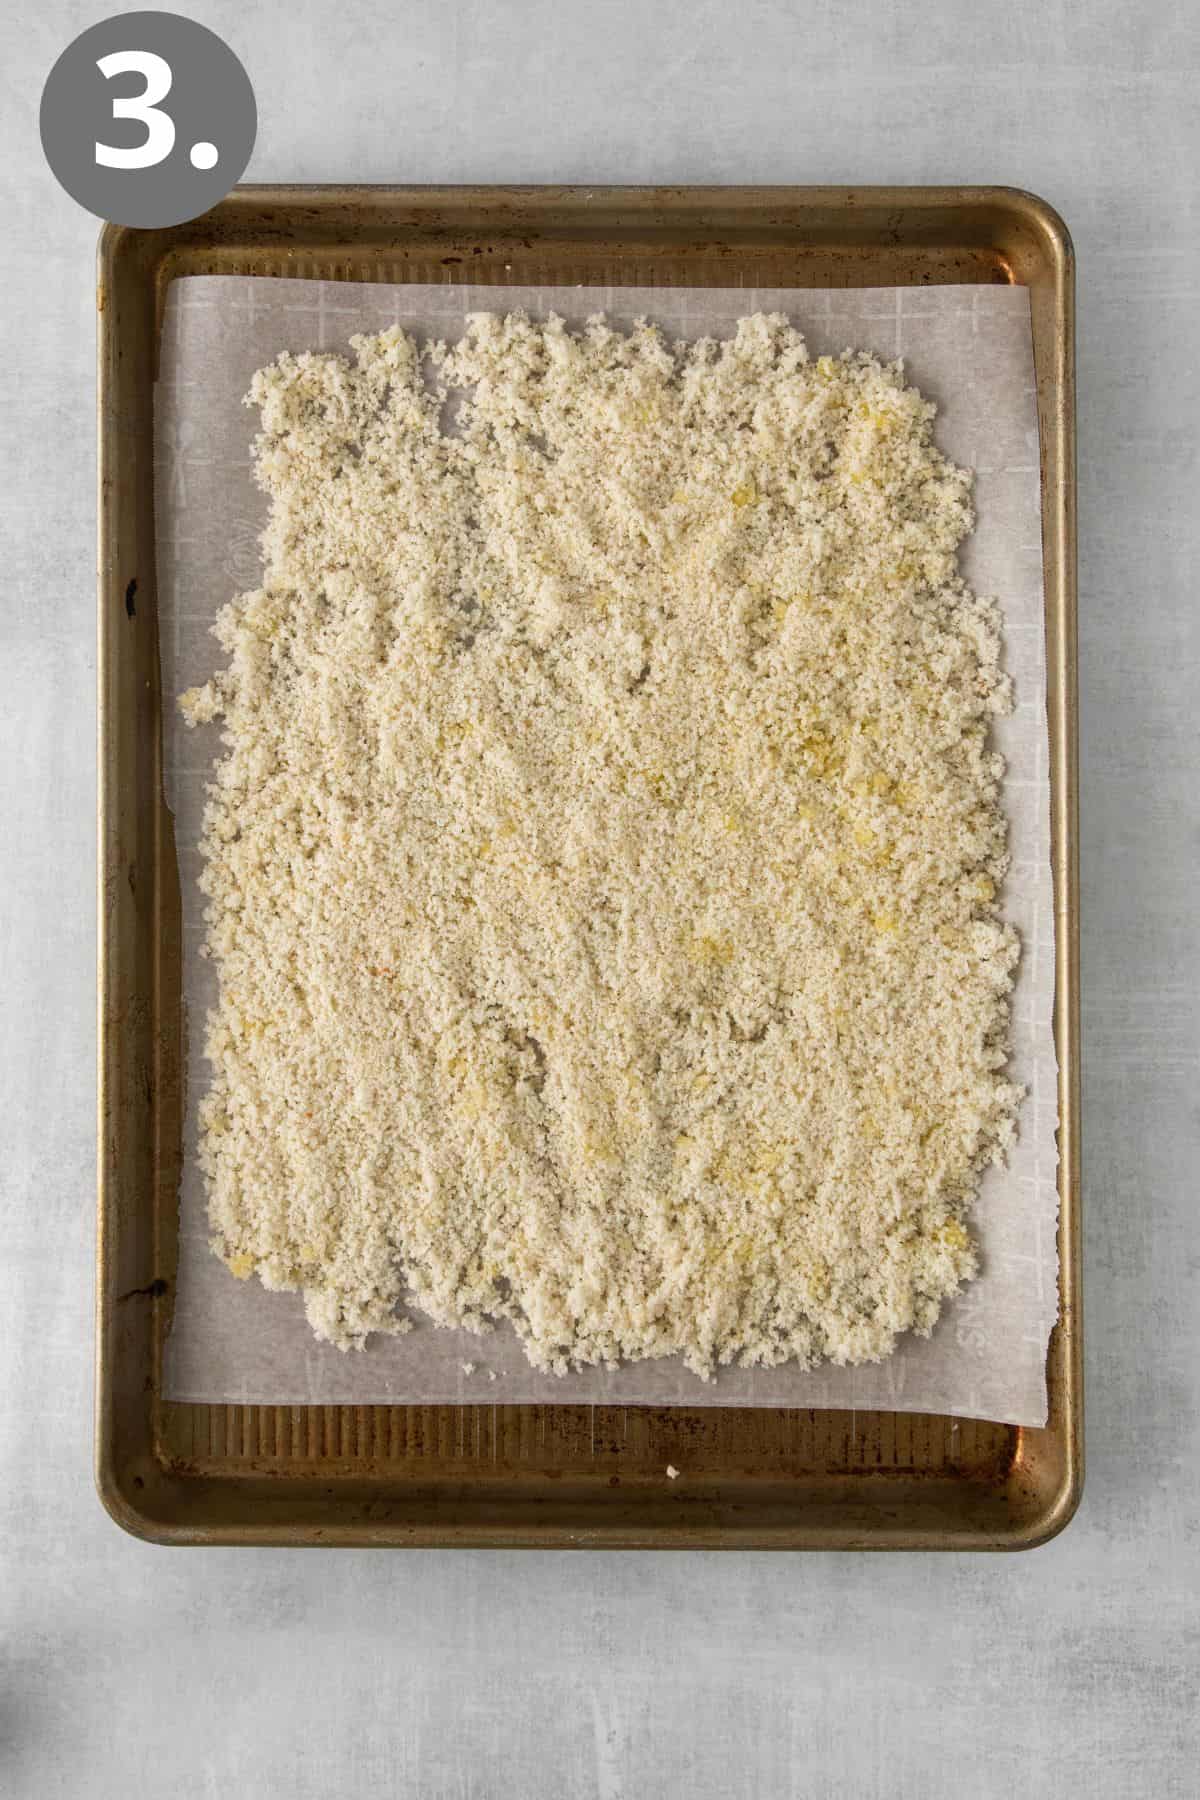 Gluten-free breadcrumbs on a baking sheet before baking